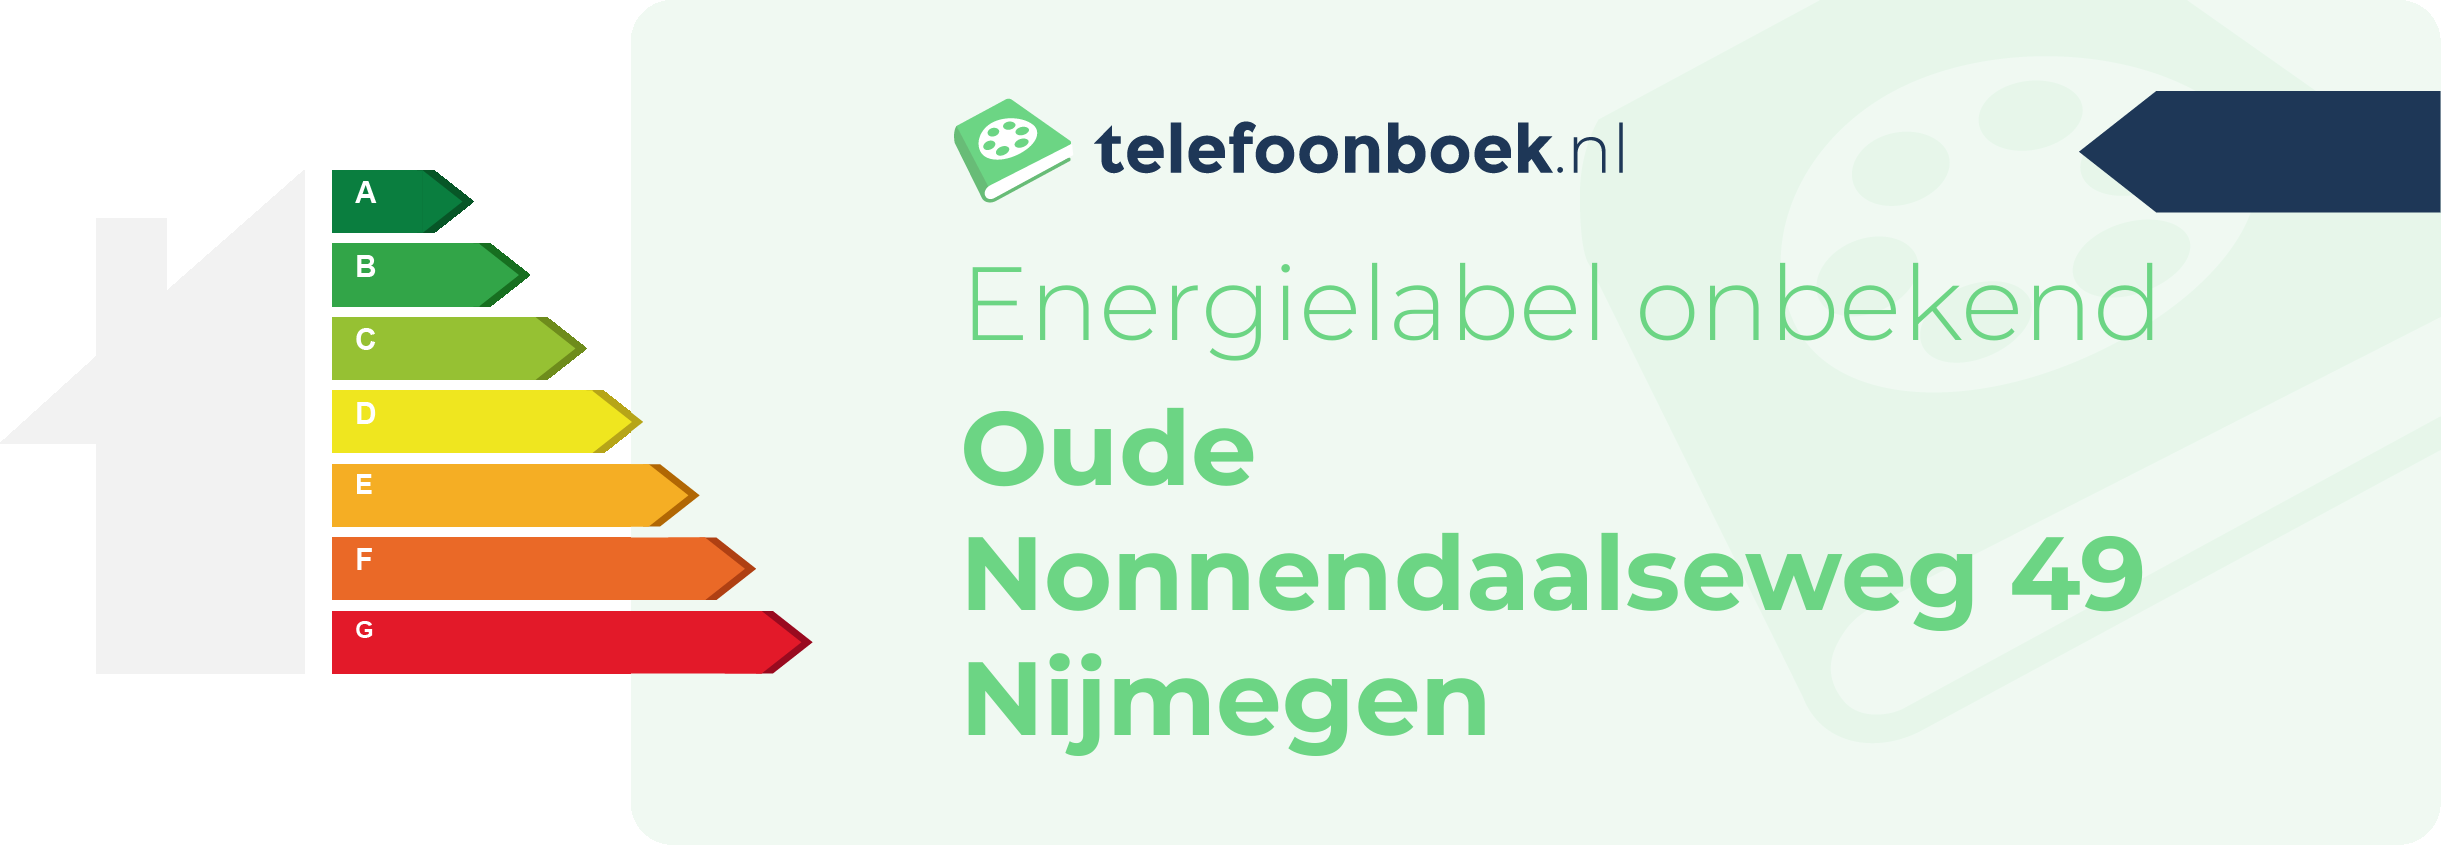 Energielabel Oude Nonnendaalseweg 49 Nijmegen